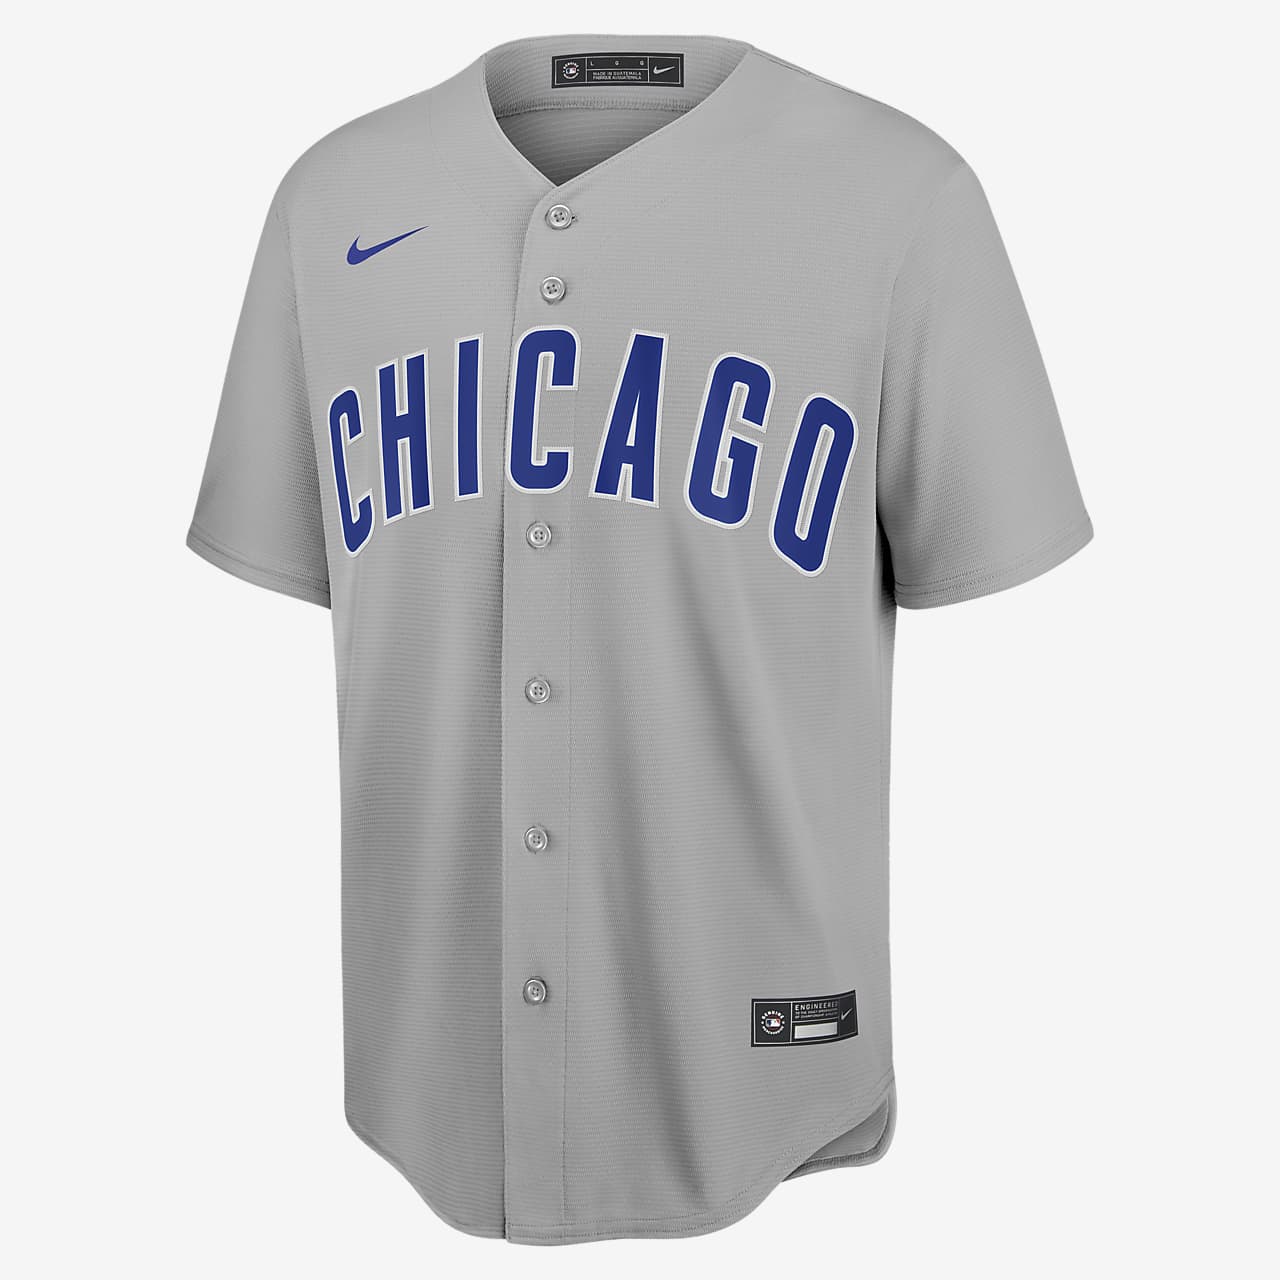 Camiseta de béisbol Replica para hombre MLB Chicago Cubs (Anthony Rizzo)